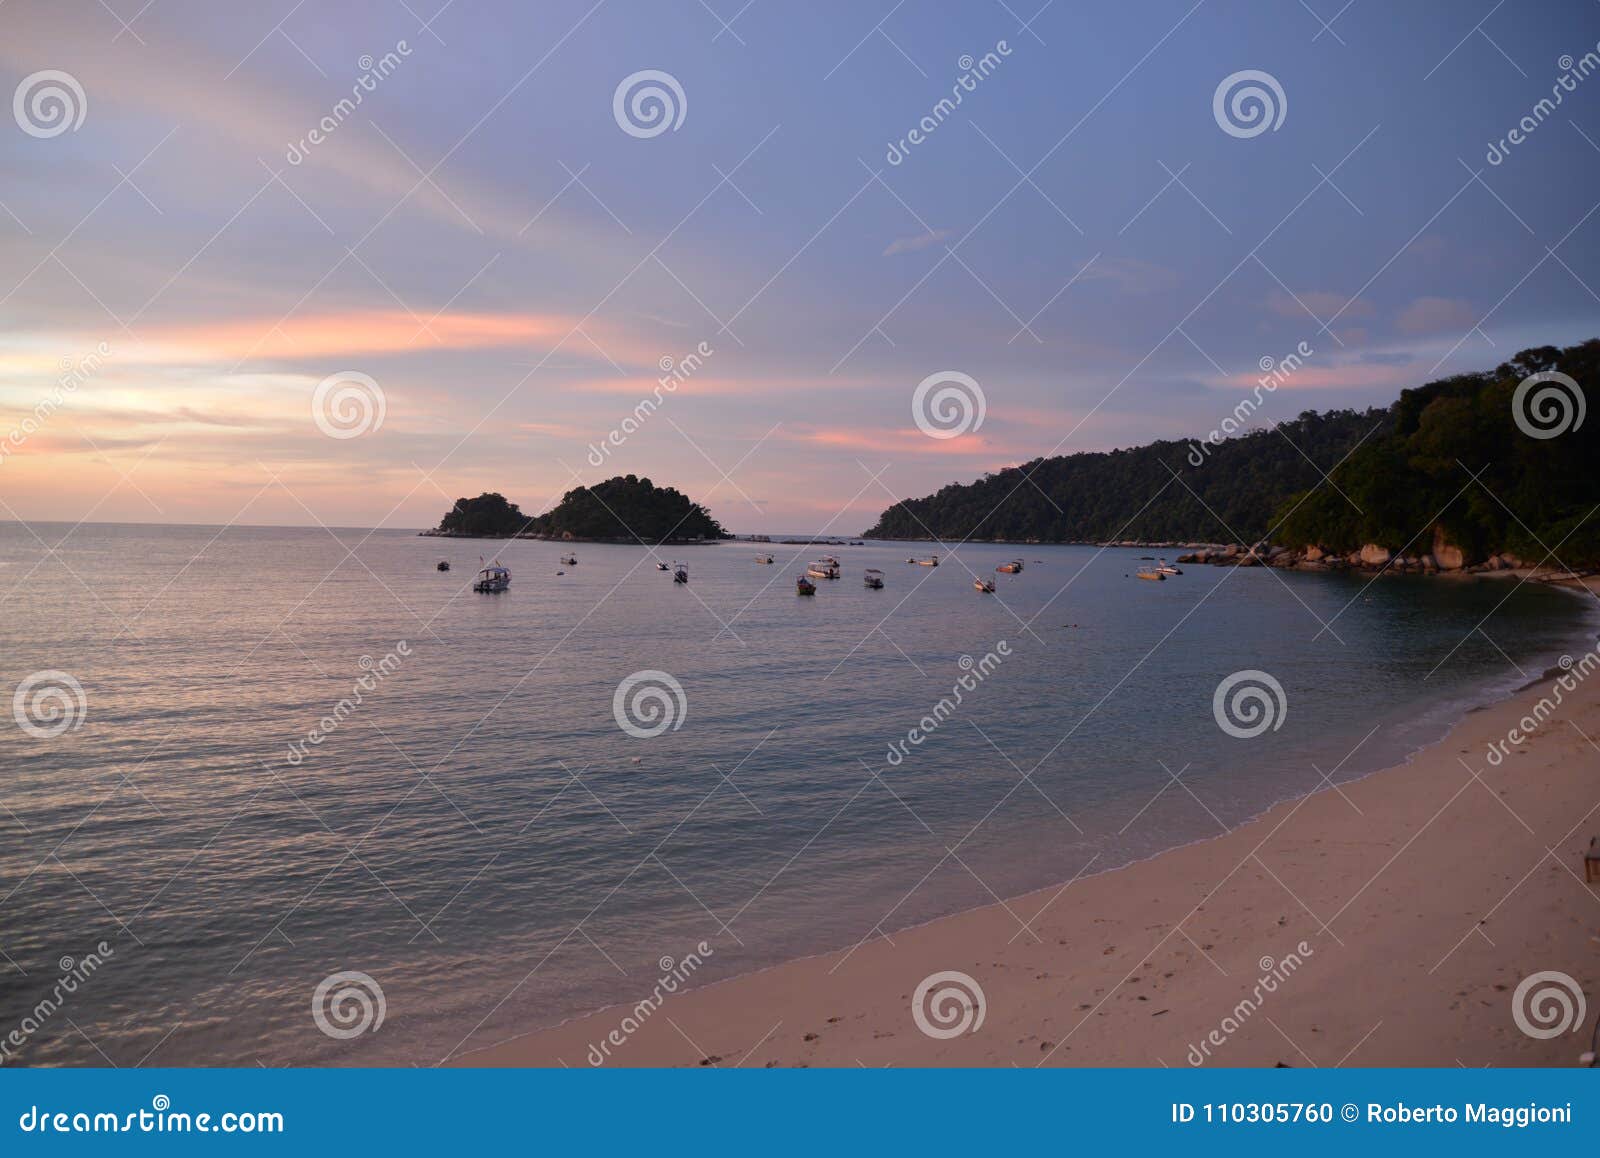 pulau pangkor island, malaysia. teluk nipah beach by sunset